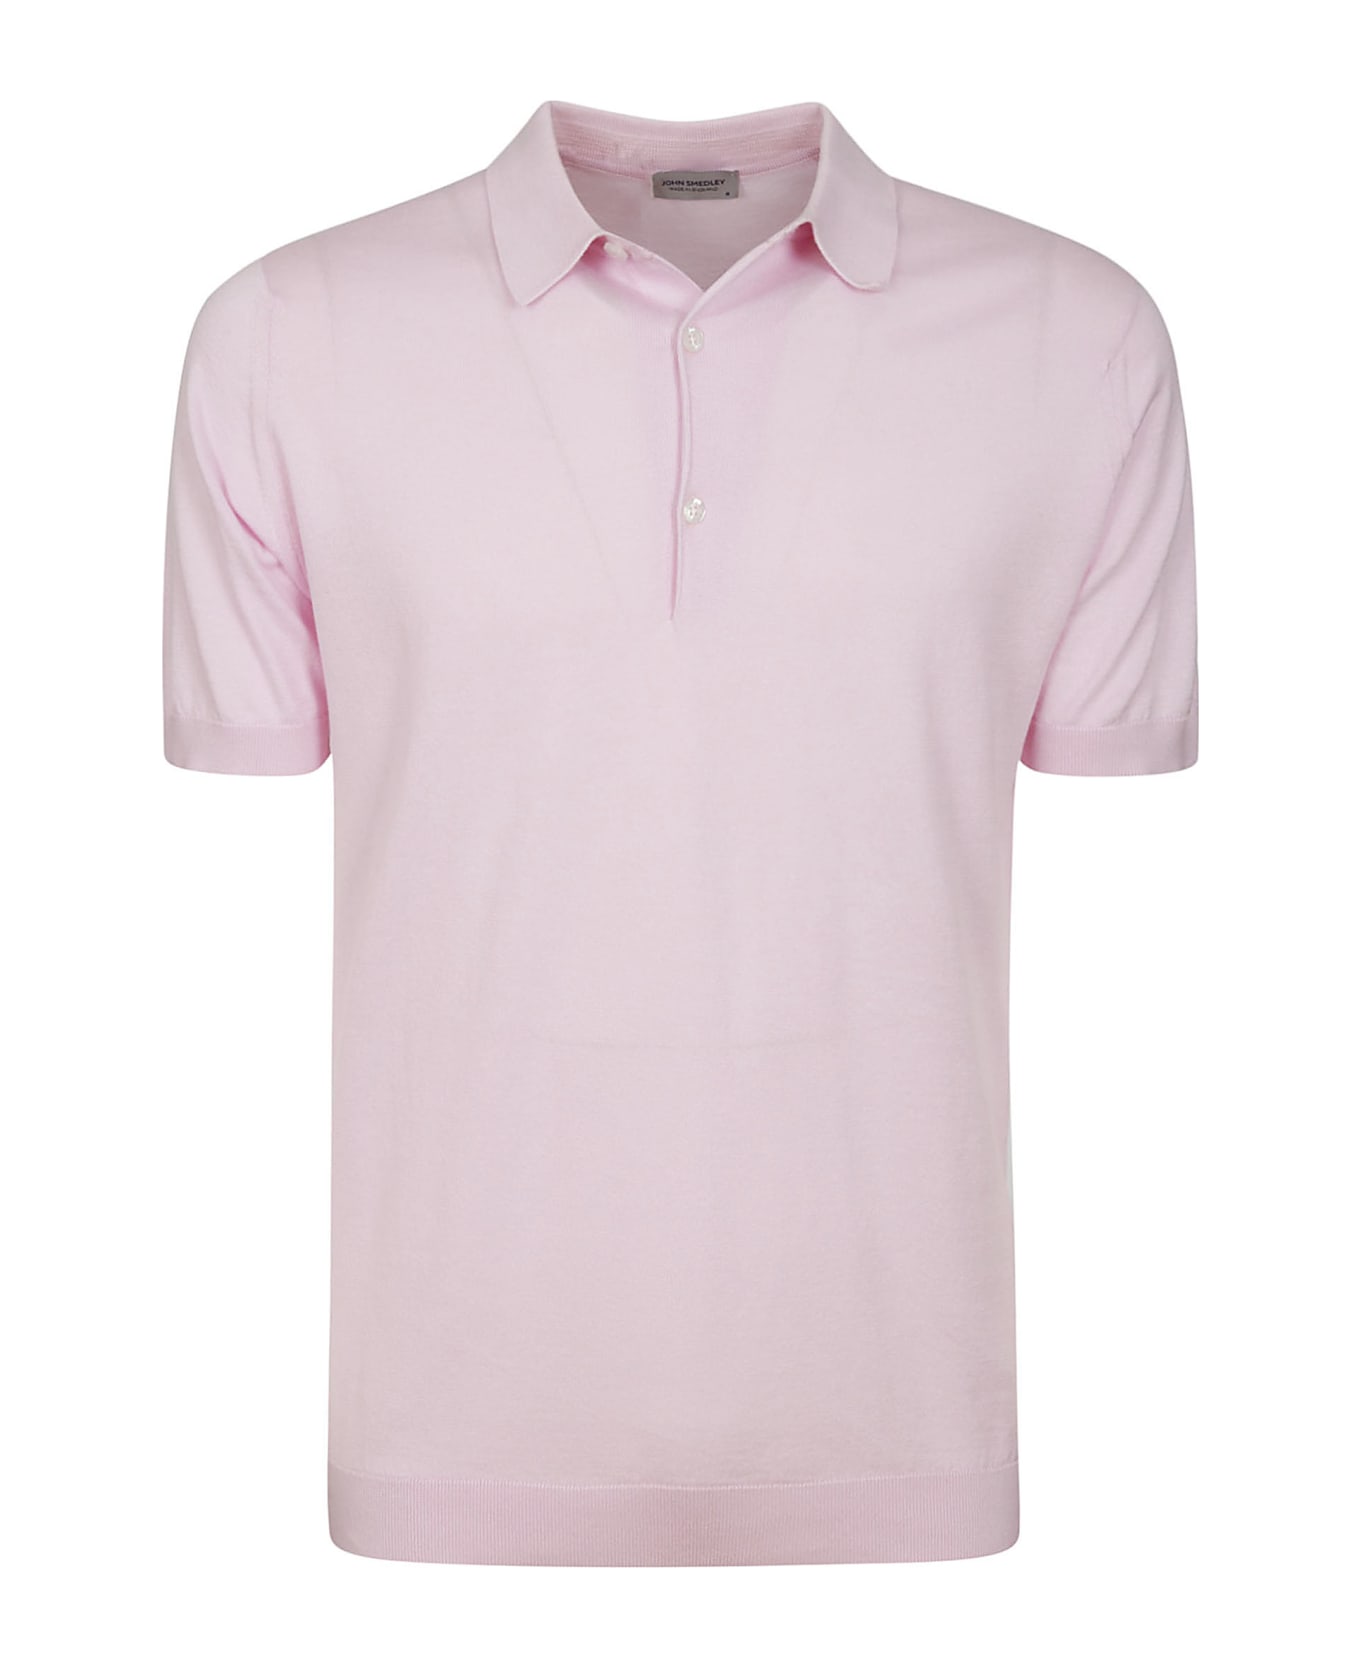 John Smedley Adrian Shirt Ss - Mallow Pink